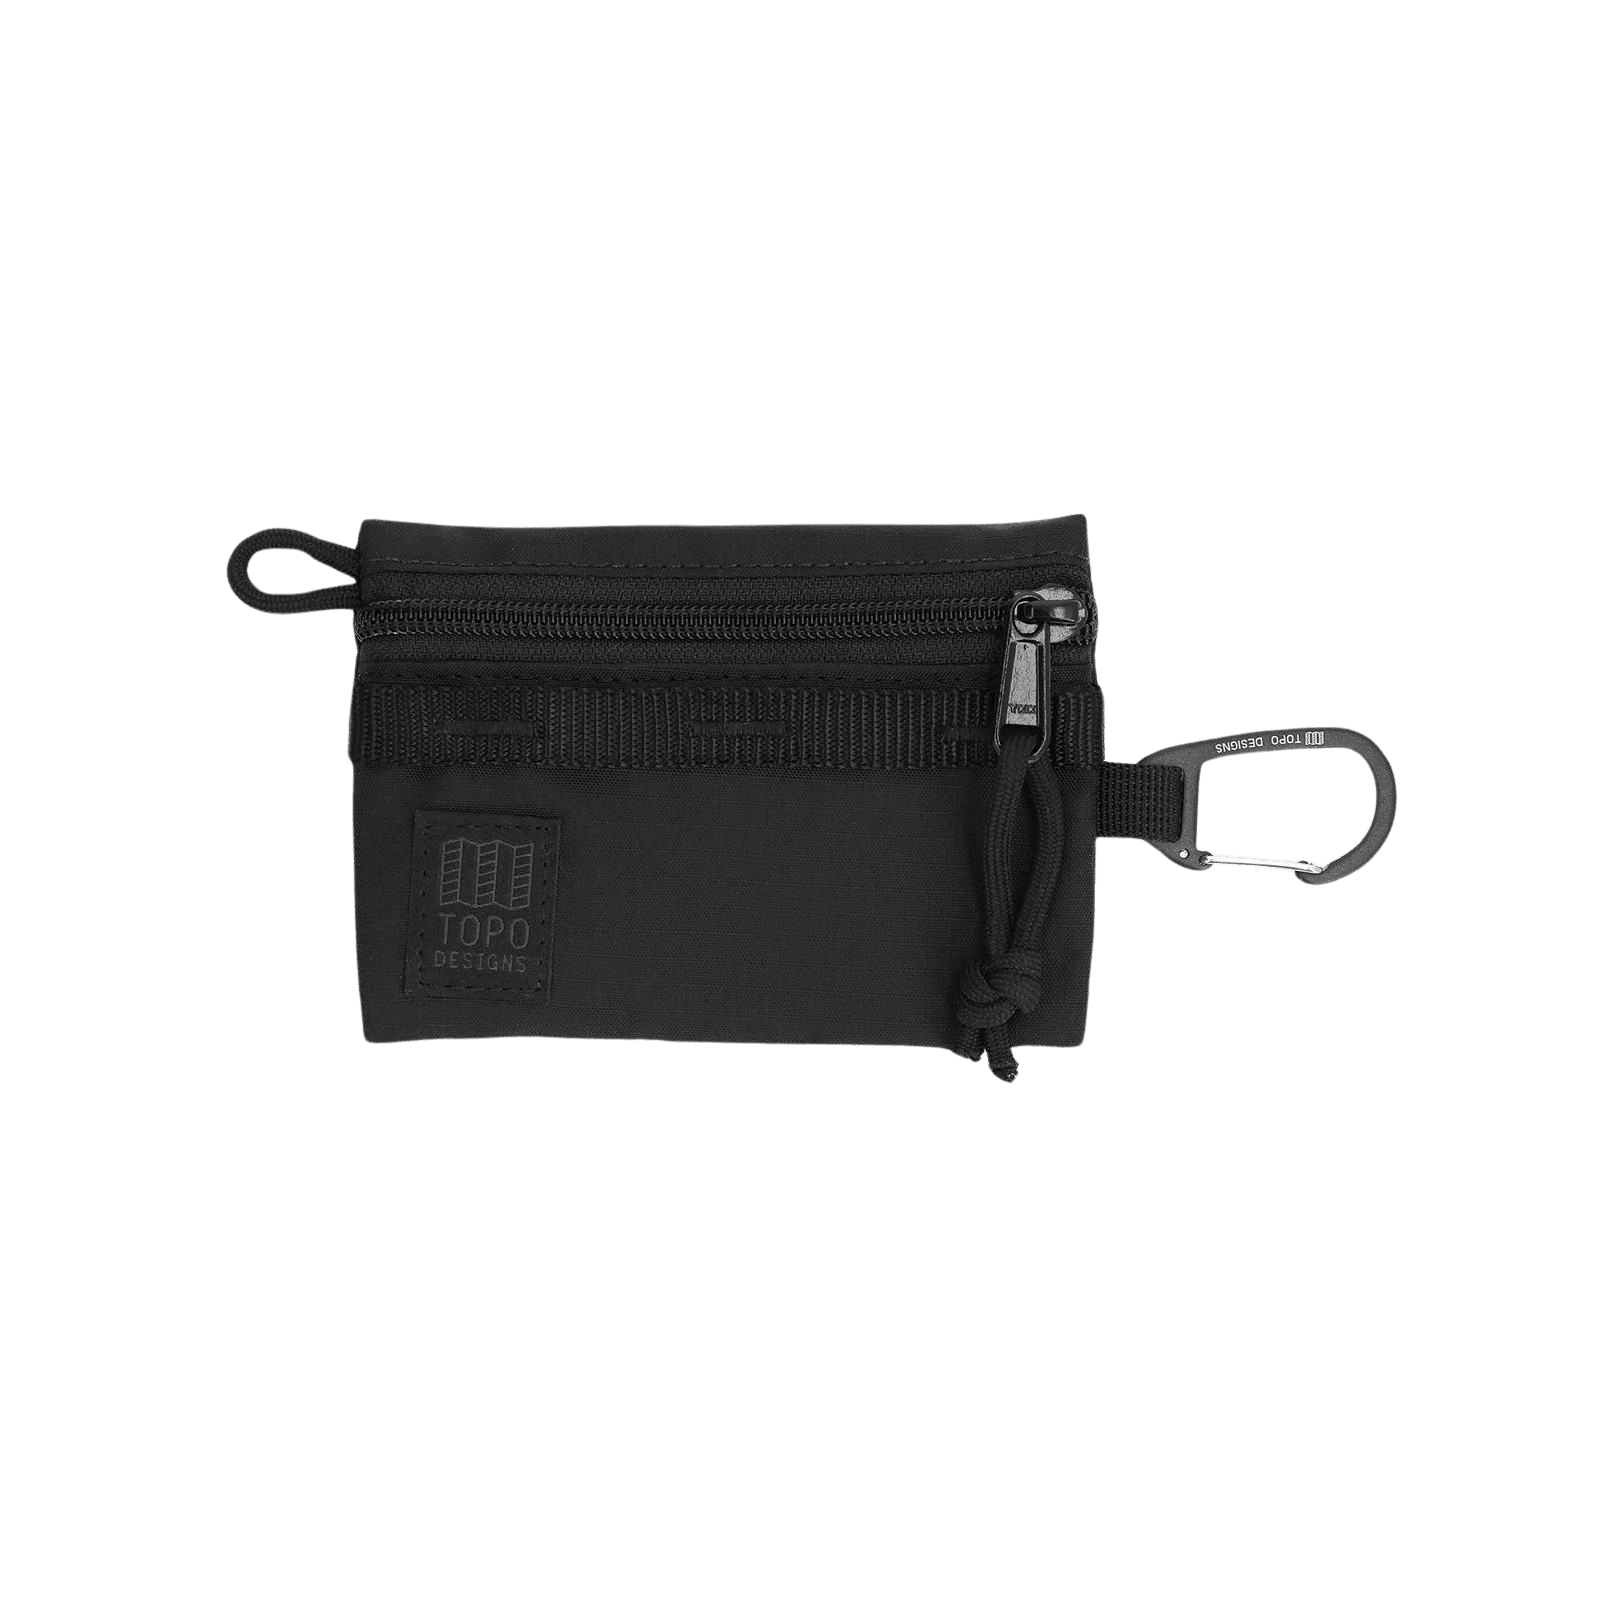 Neceser Topo Designs Mountain Micro Accesory Bag Black Black - ECRU